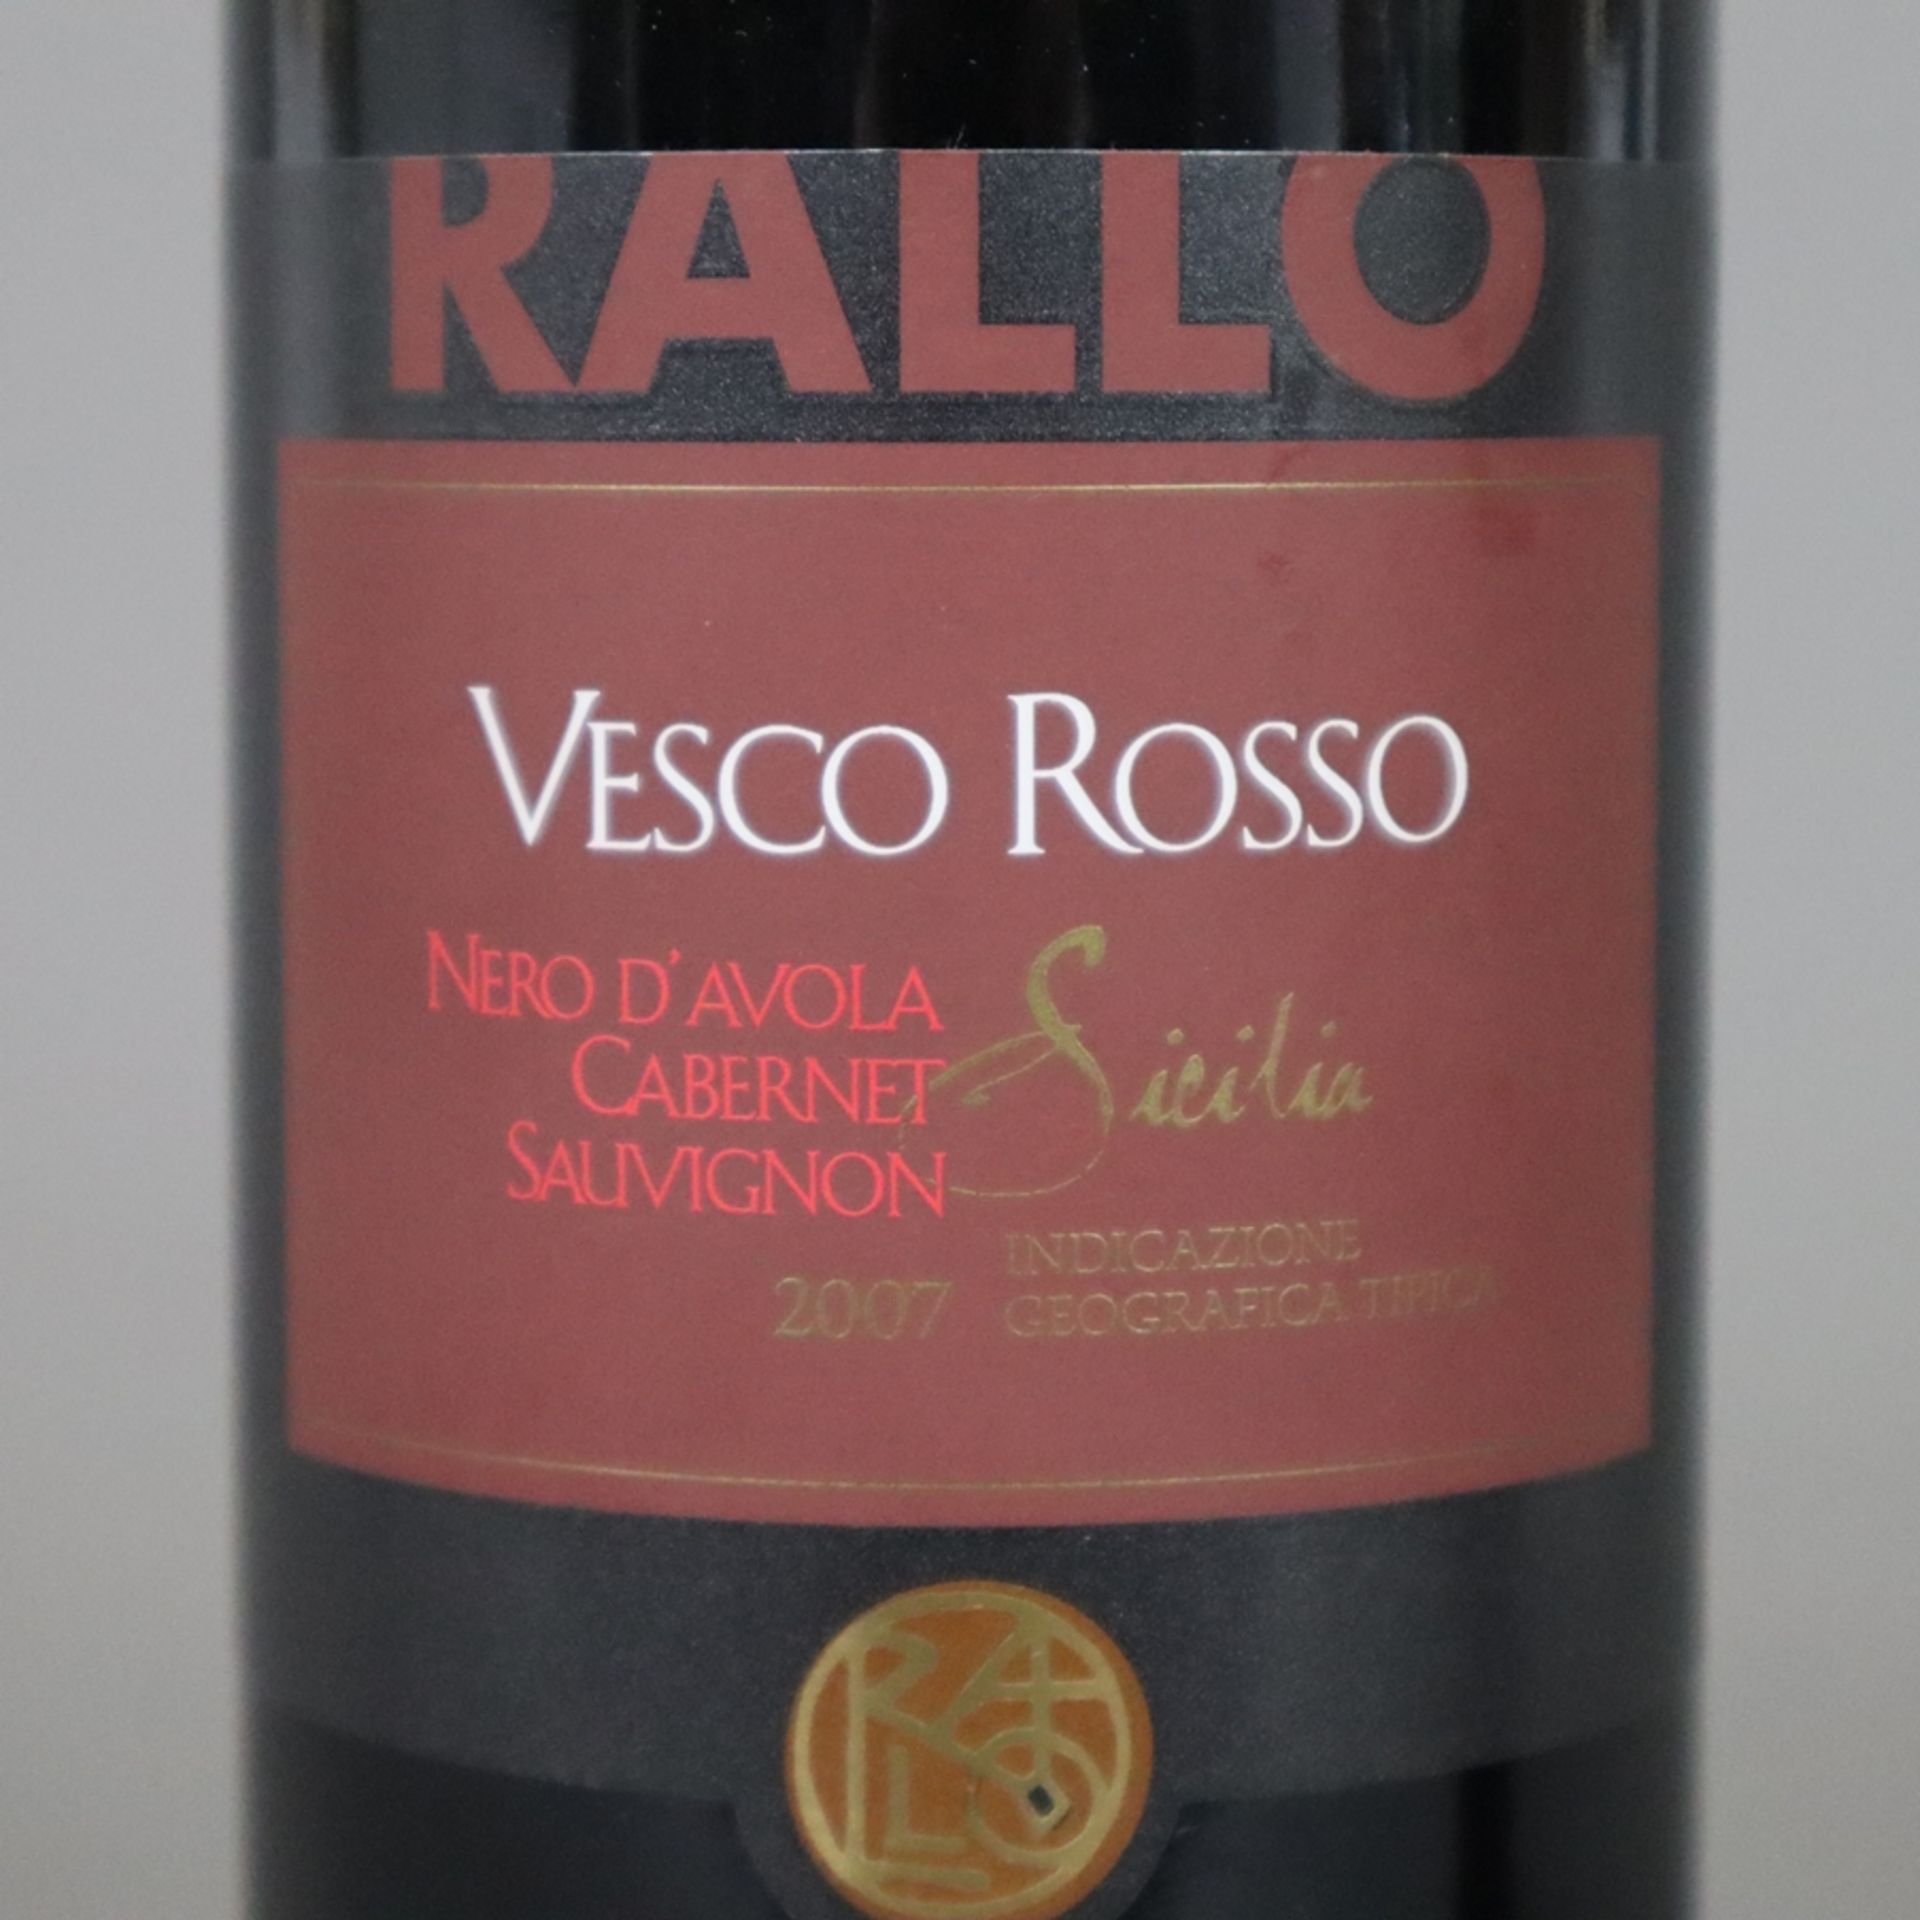 Weinkonvolut - 2 Flaschen 2007 Rallo Vesco Rosso Nero d'Avola /Cabernet Sauvignon Sicilia IG, Itali - Image 4 of 5